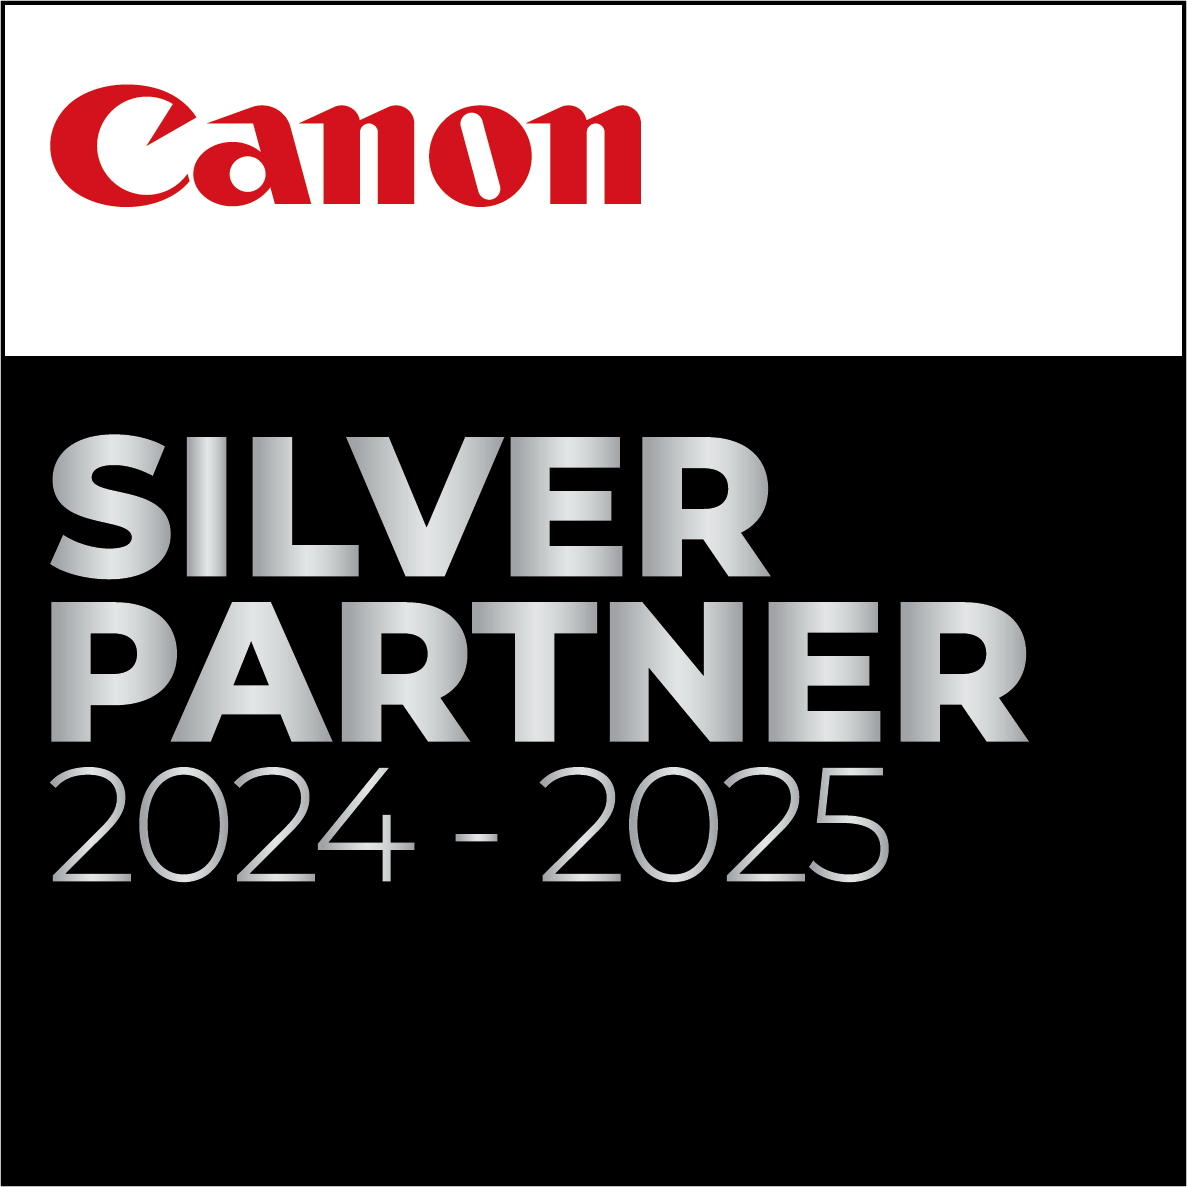 Canon Silver Partner 2024-2025